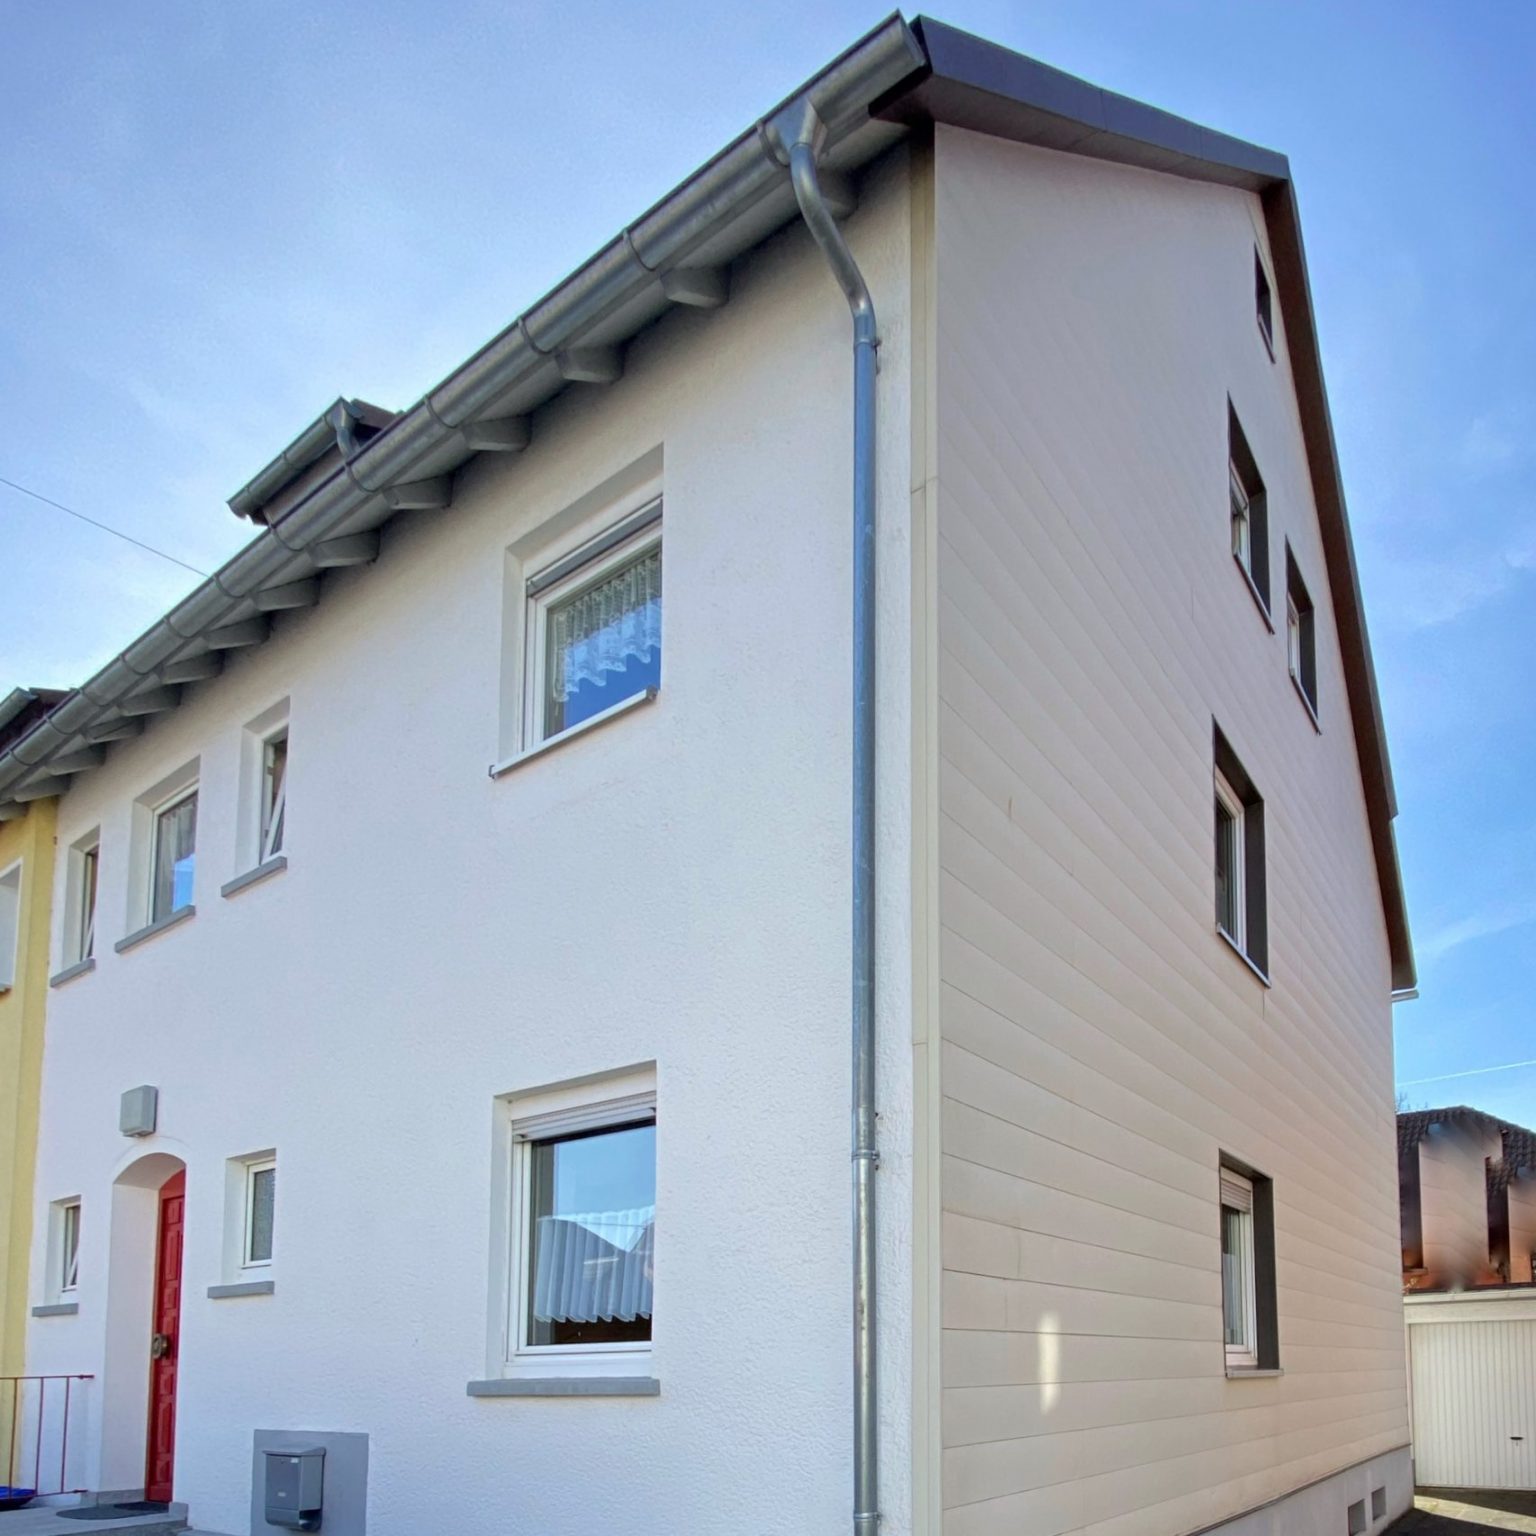 Schiller Immobilien verbindet Sie mit exklusiven Immobilienangeboten und attraktiven Investitionsmöglichkeiten in Weißenburg und Gunzenhausen.